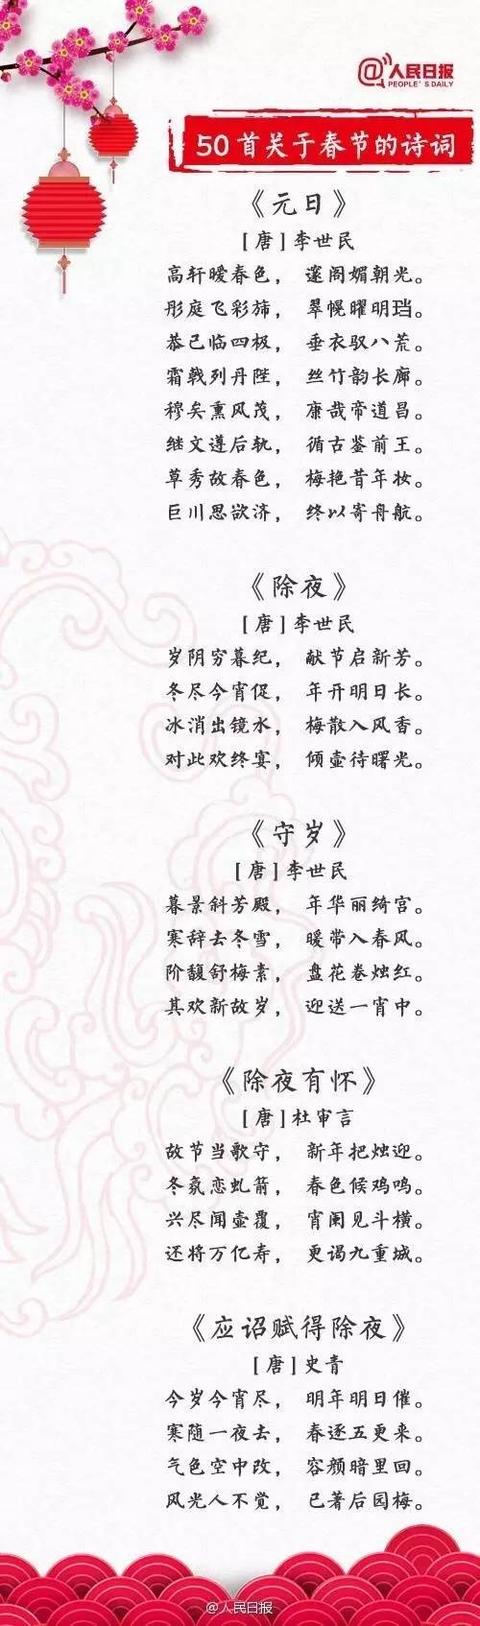 春节古今诗词